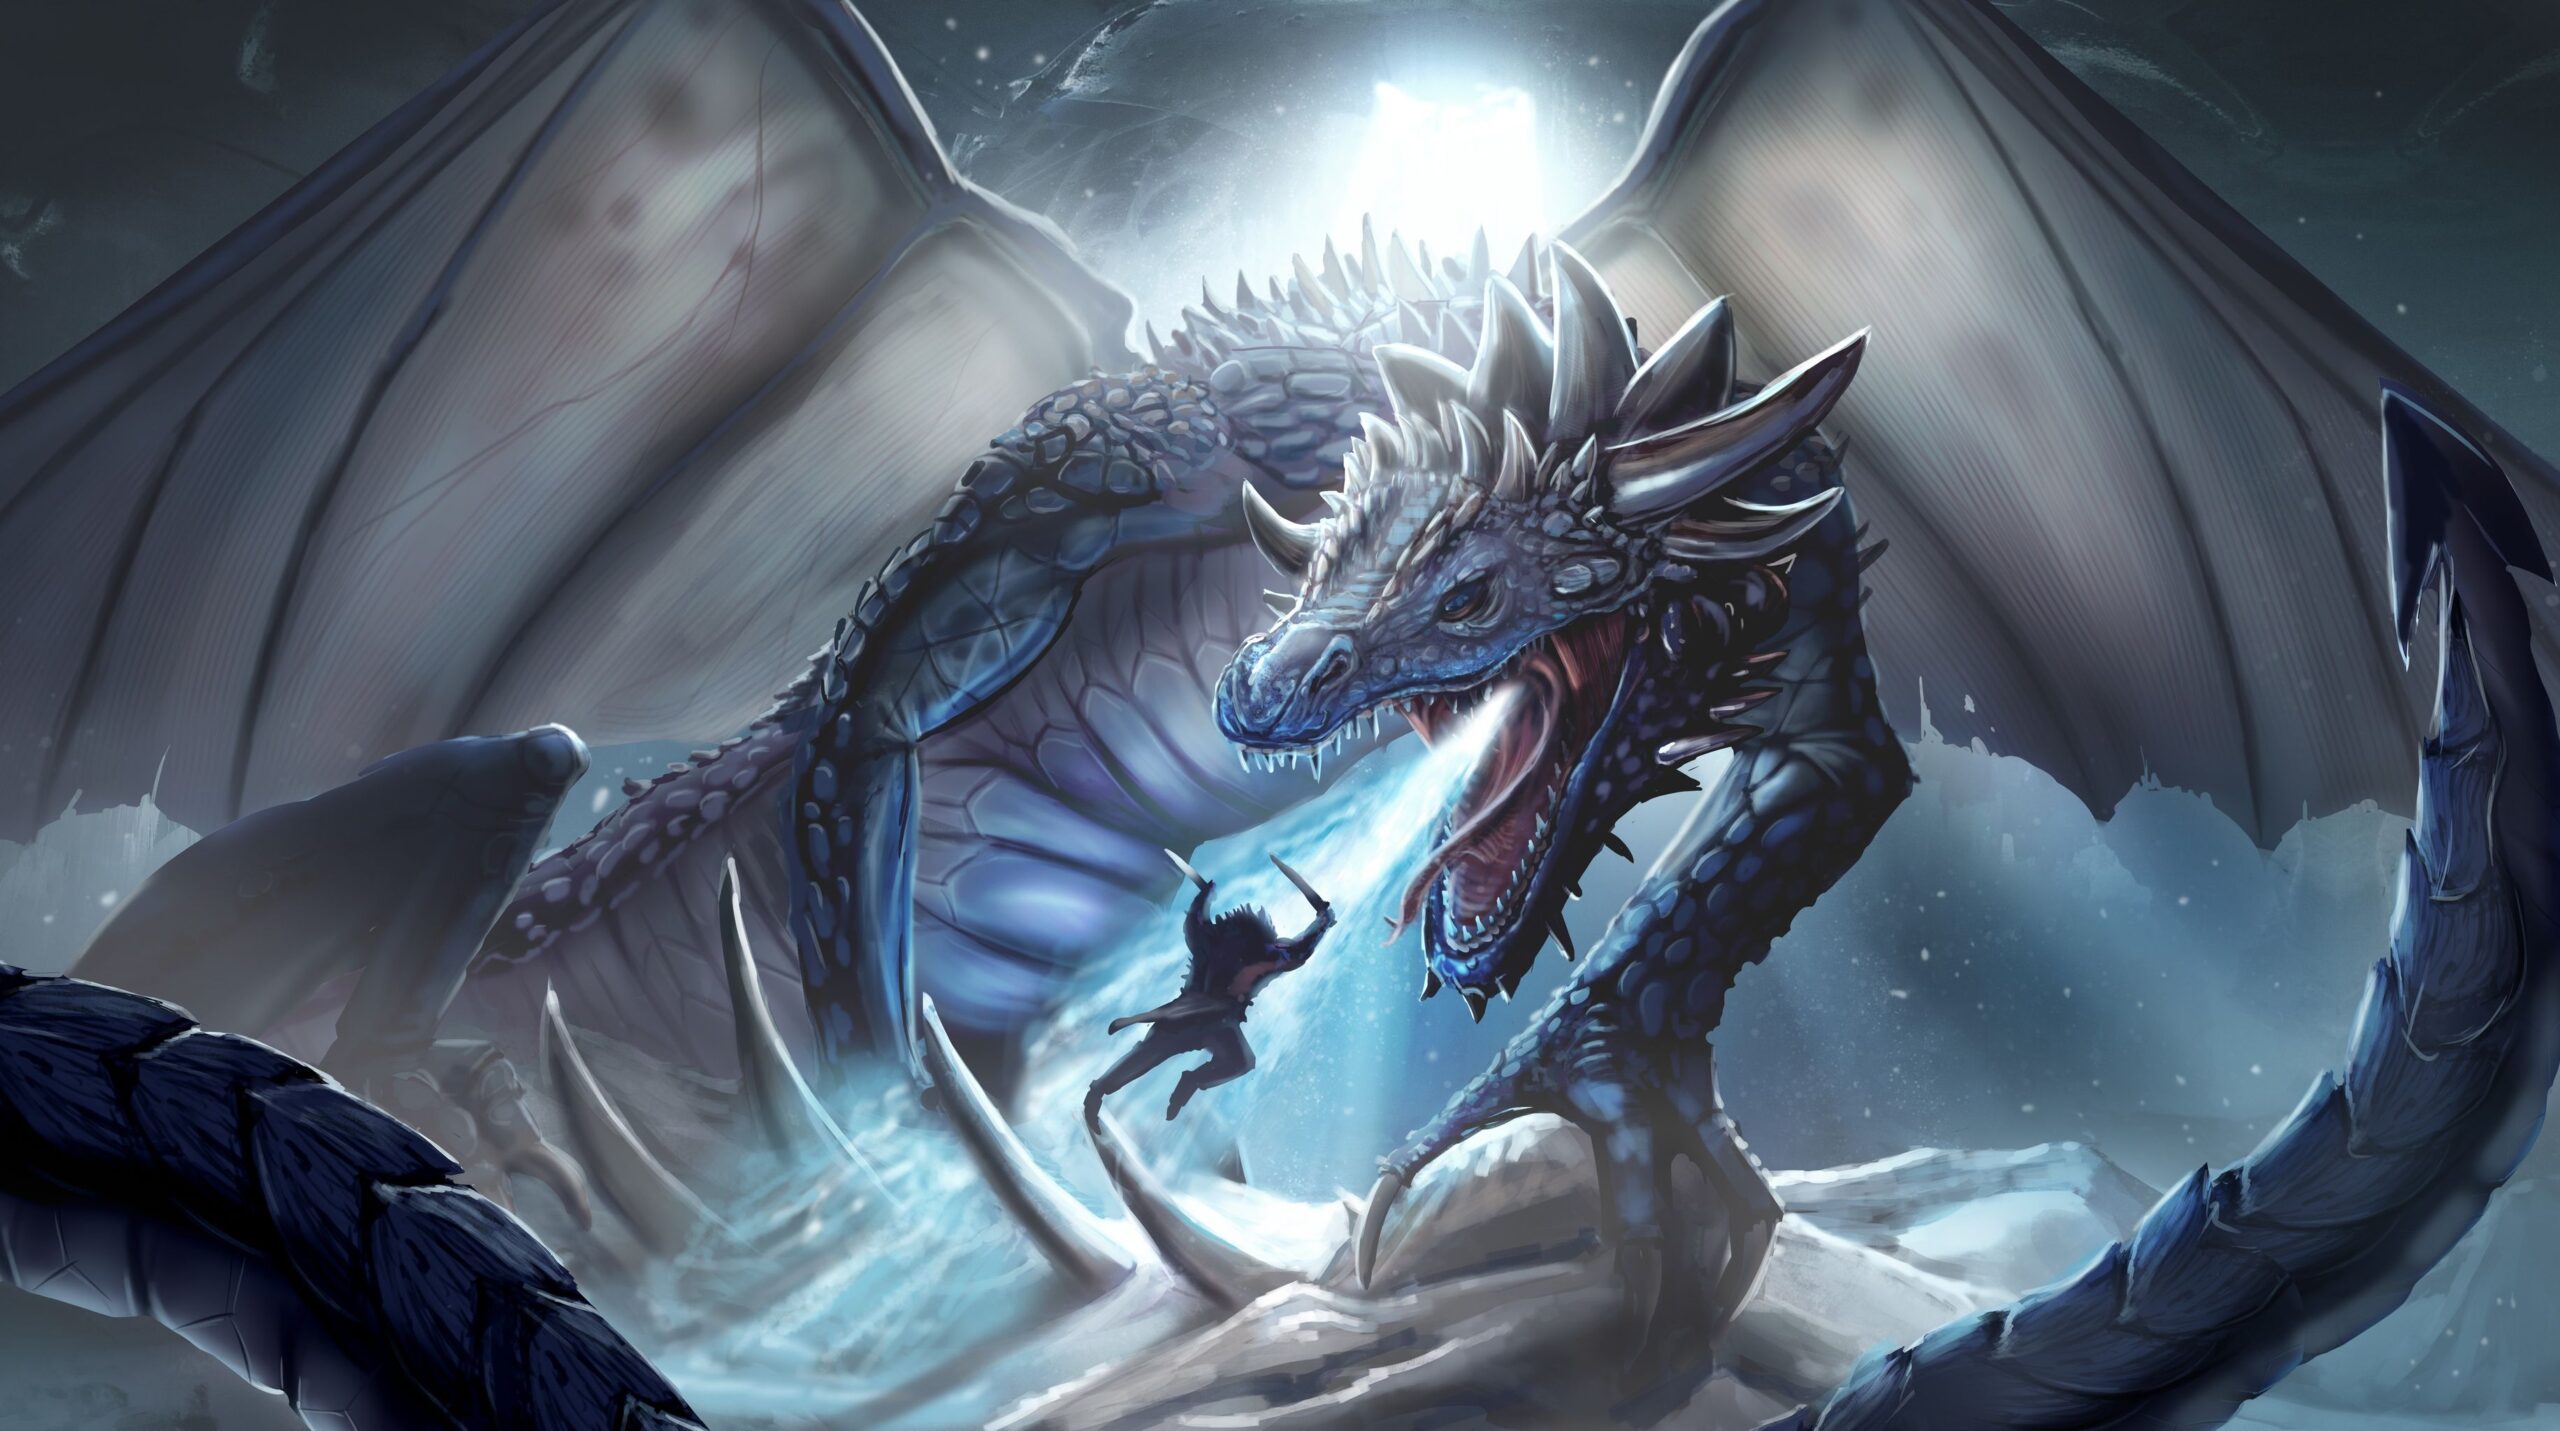 Dragon battle scene by the noble artist, fantasy artwork